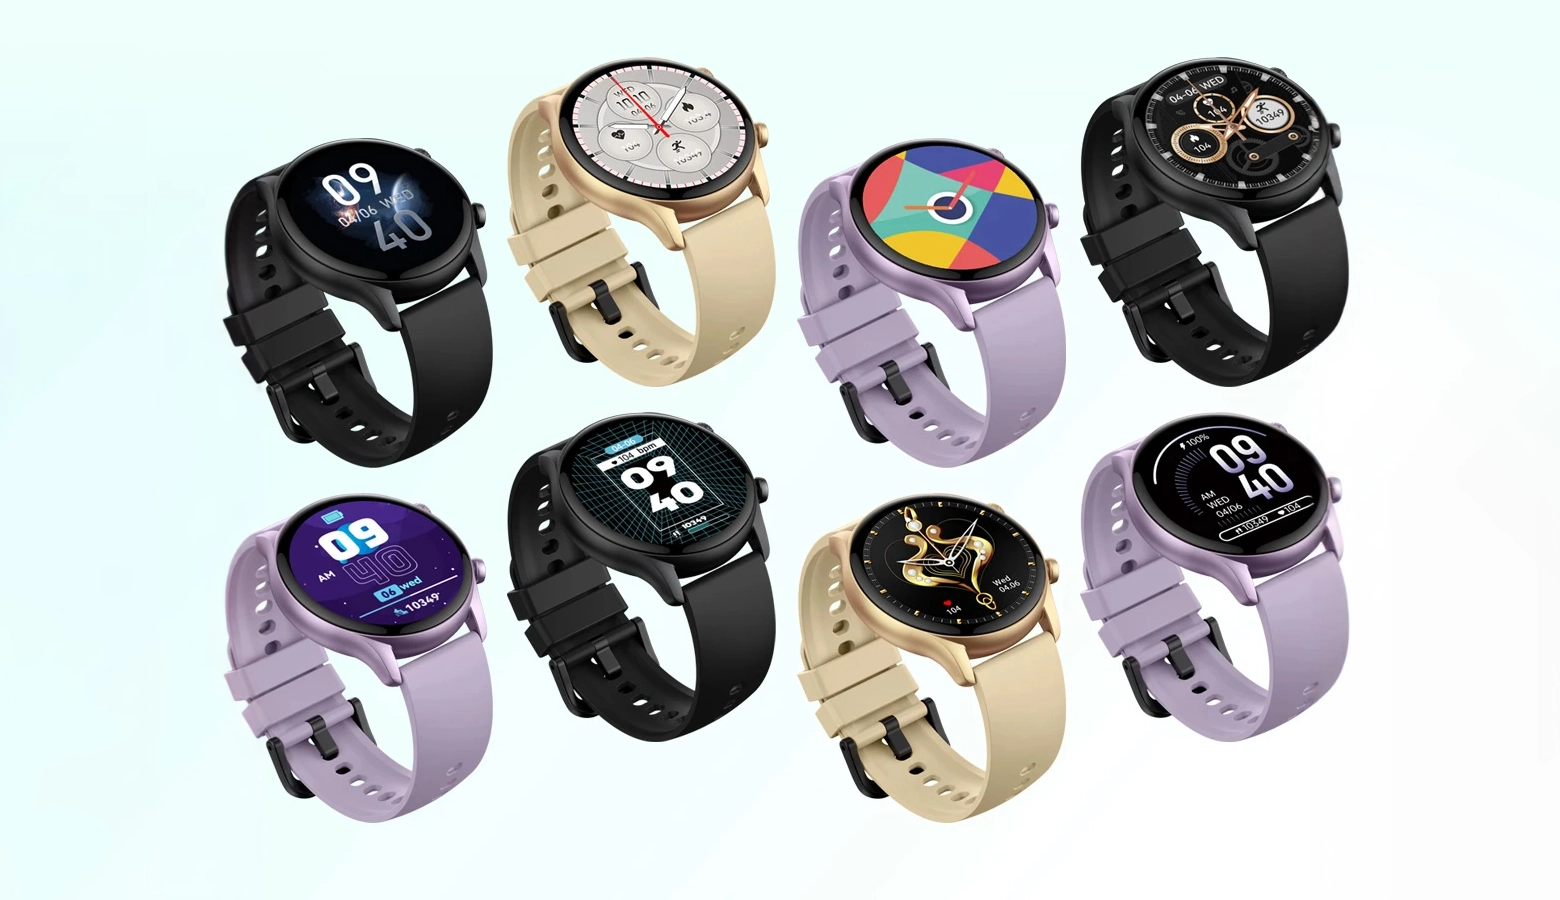 Many Zeblaze Btalk 3 Plus smart watches